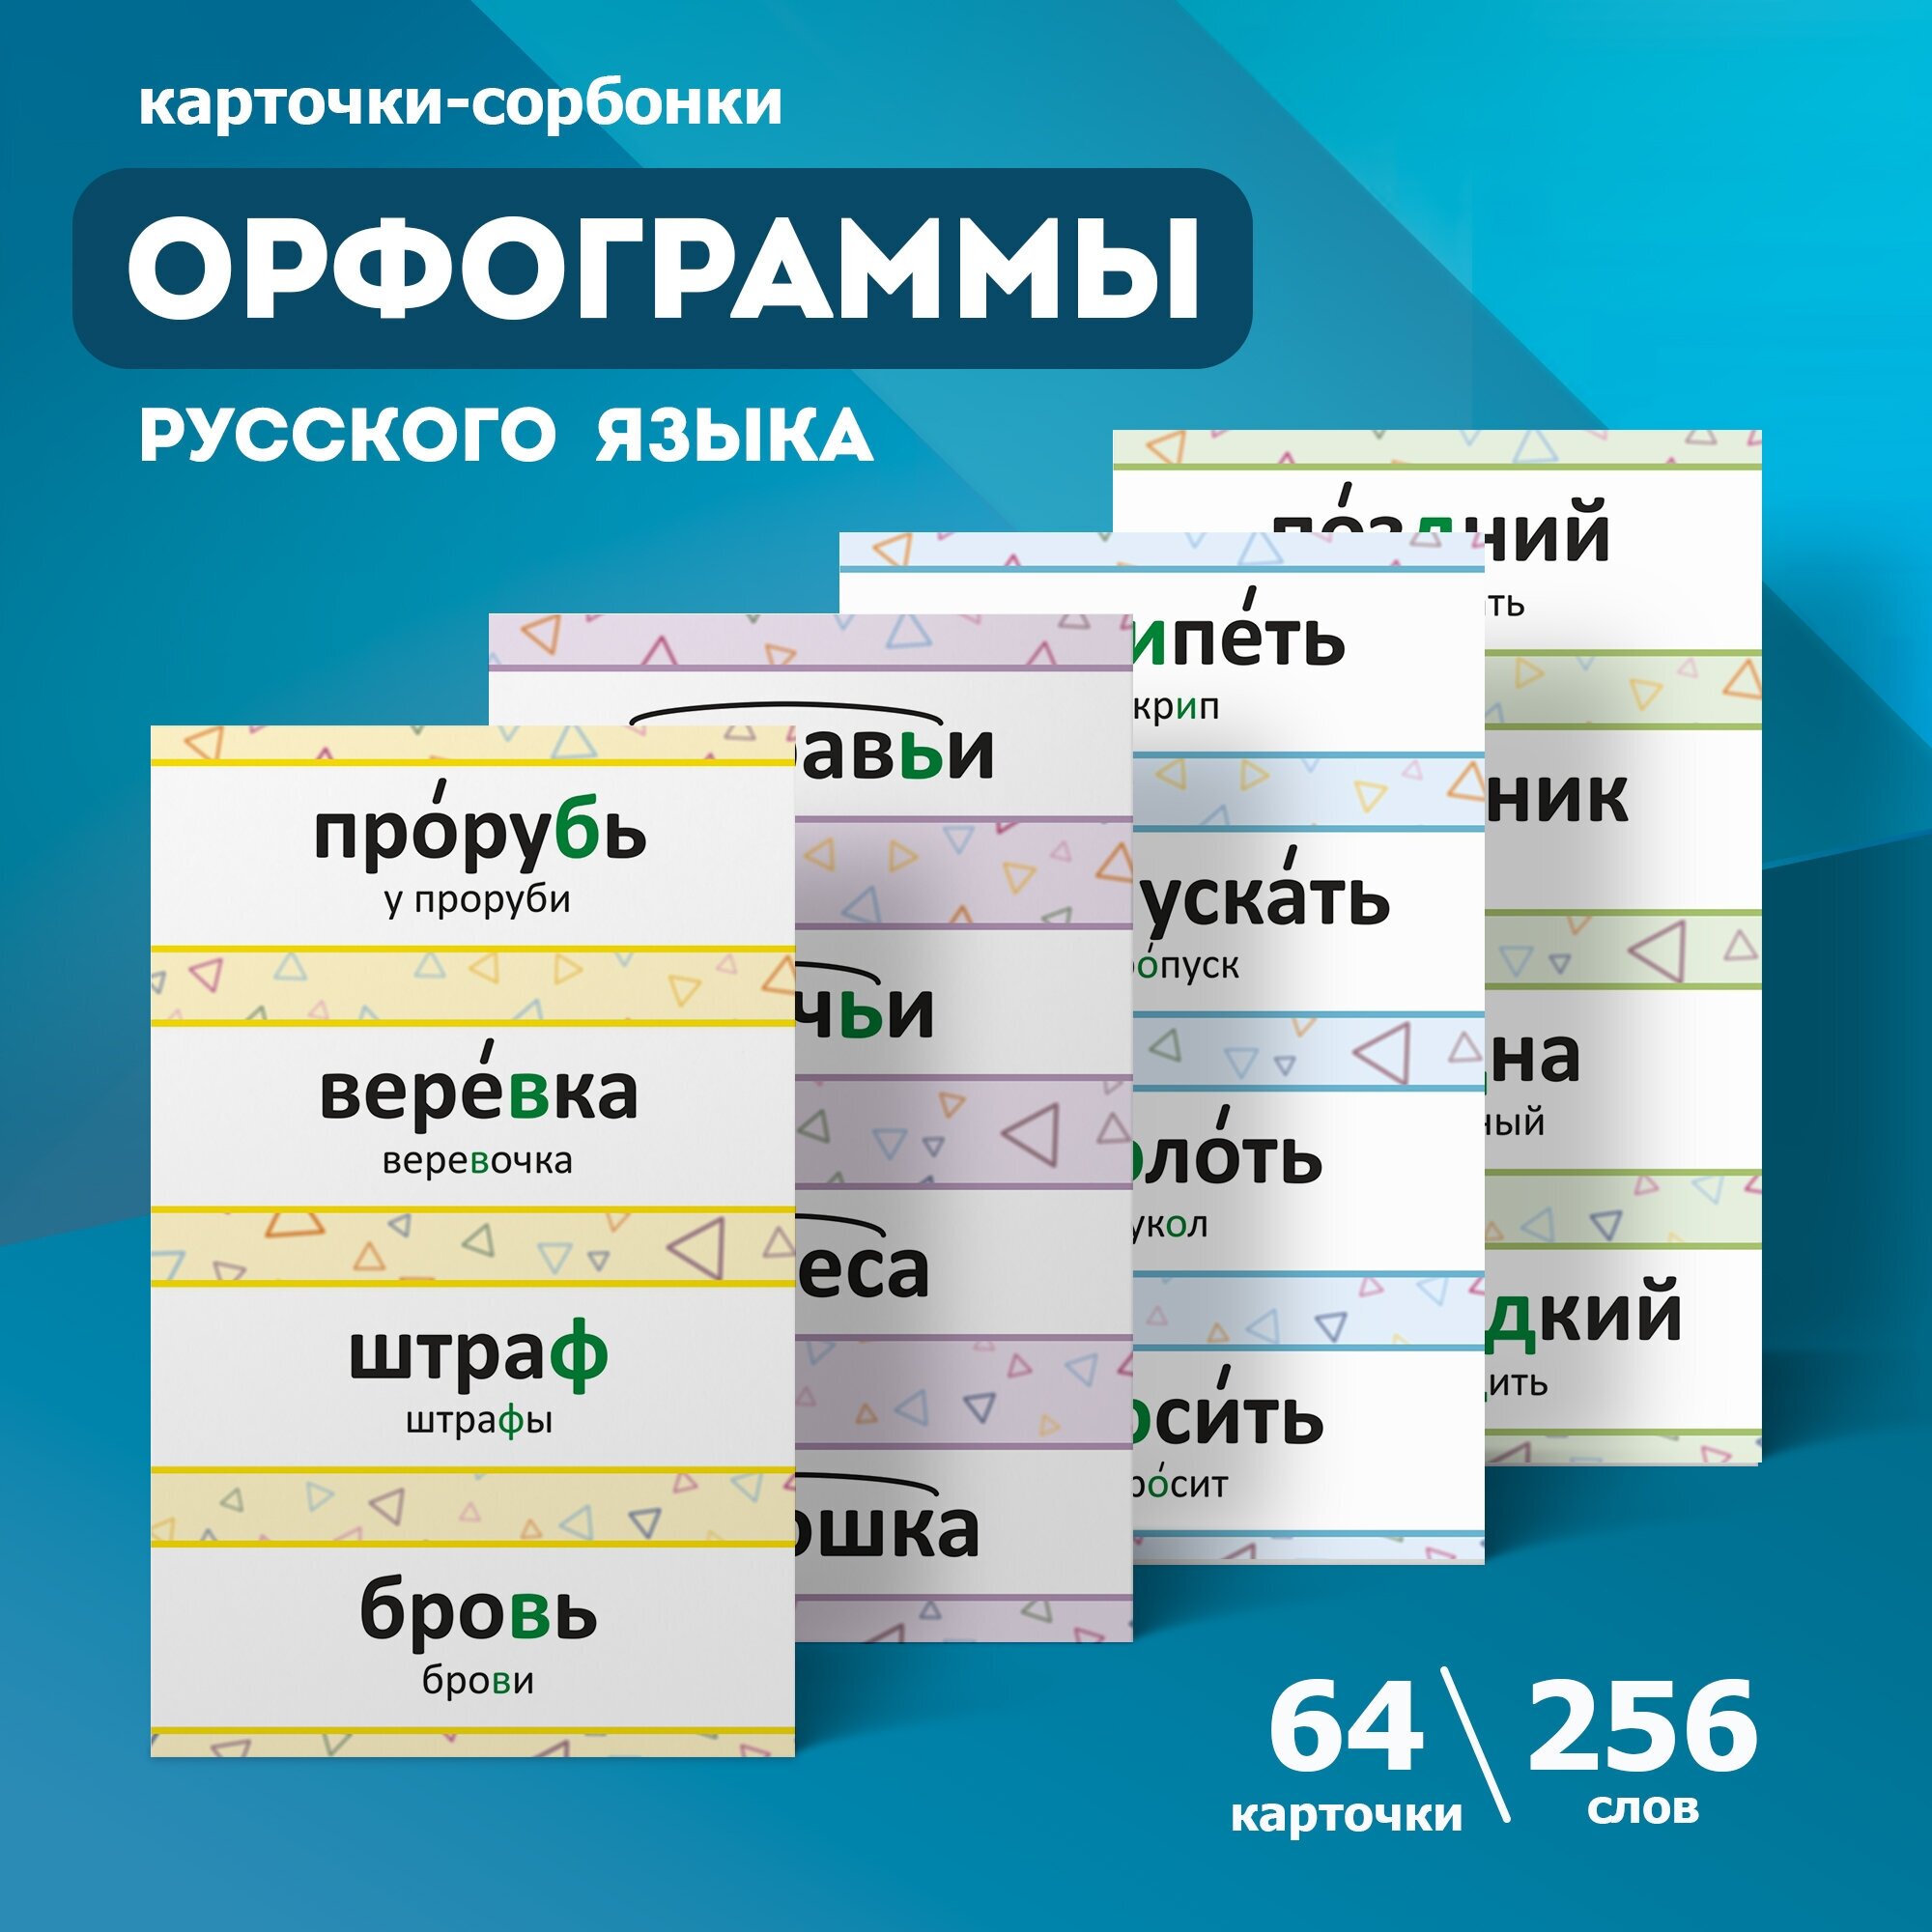 Карточки-сорбонки Орфограммы русского языка